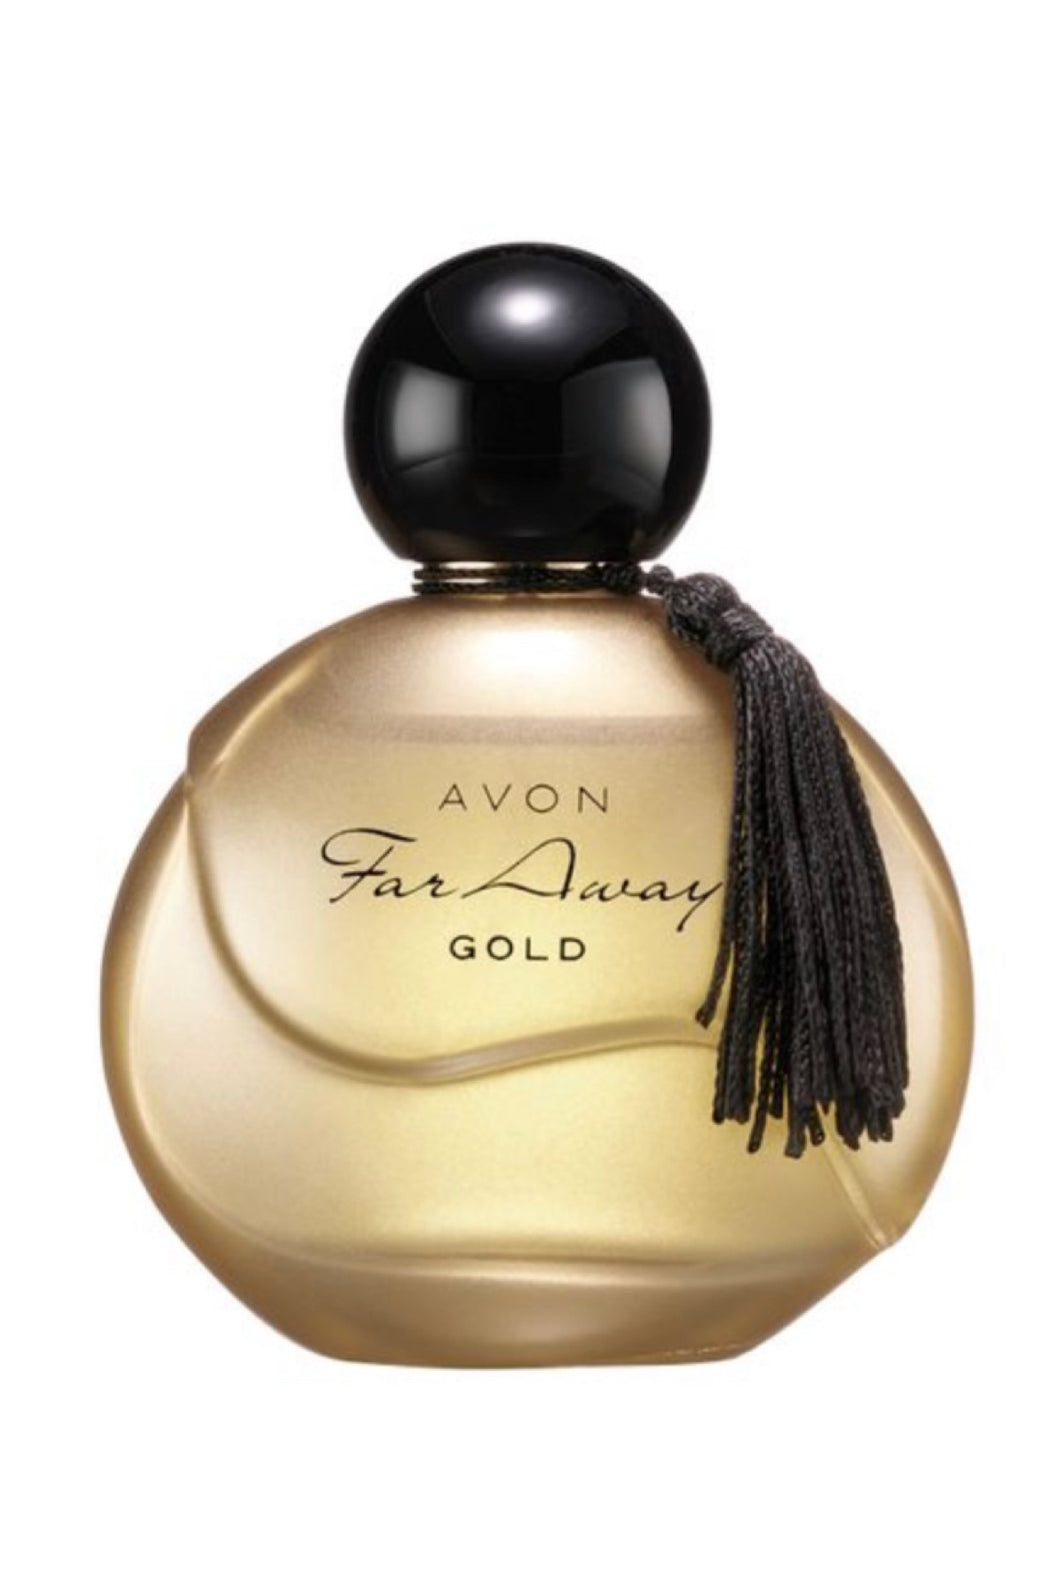 NEW FarAway Gold Eau de Parfum 50ml USA